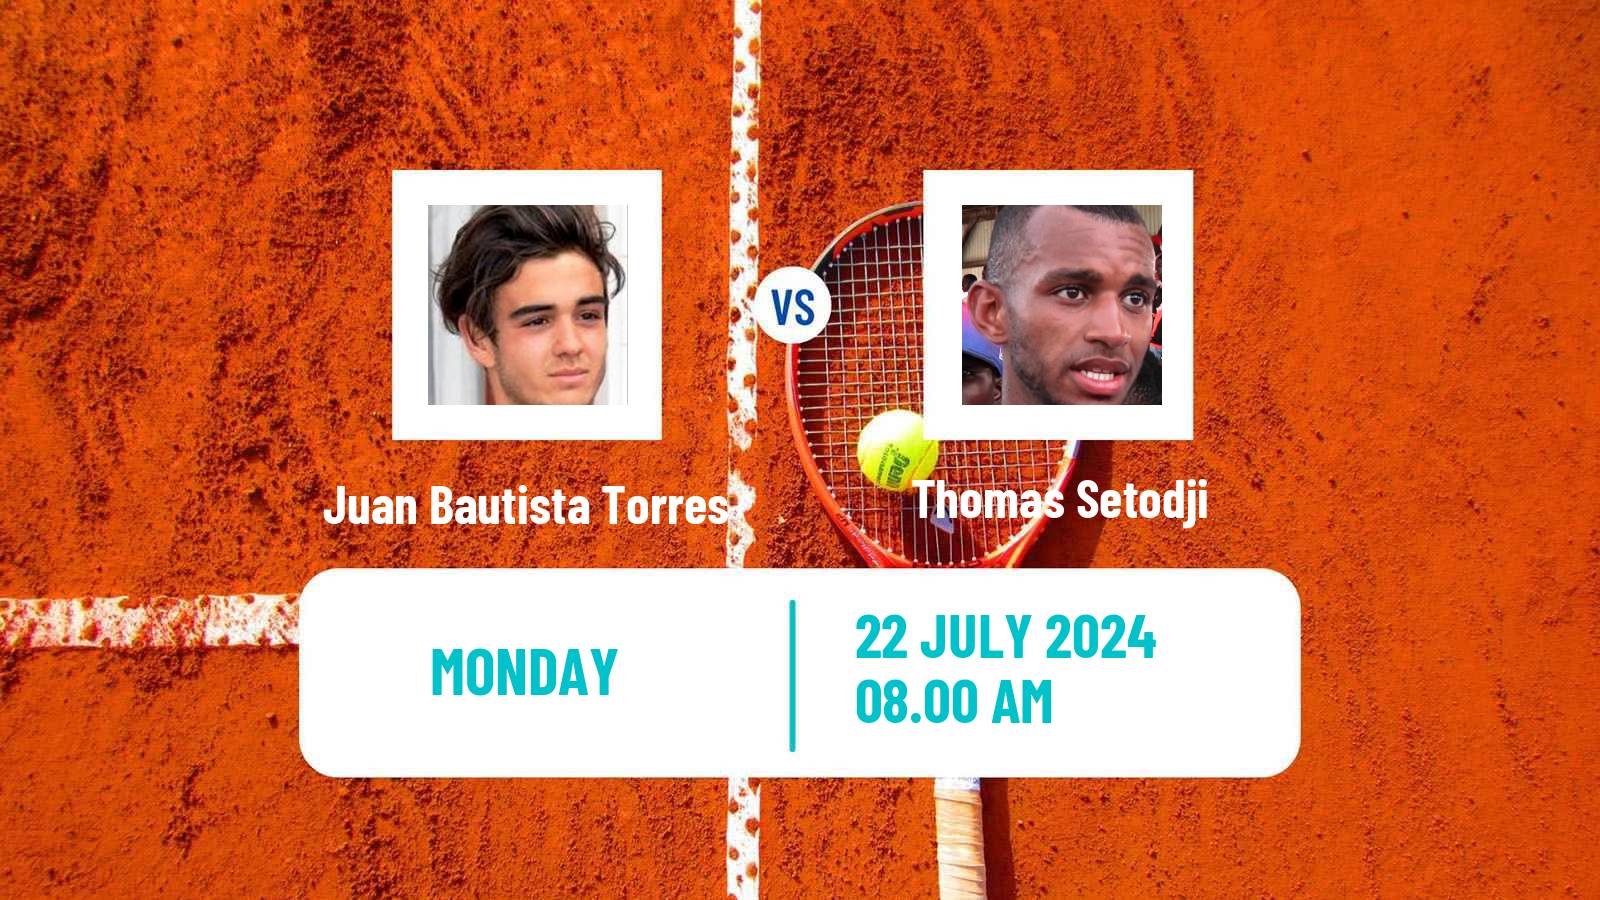 Tennis Tampere Challenger Men Juan Bautista Torres - Thomas Setodji